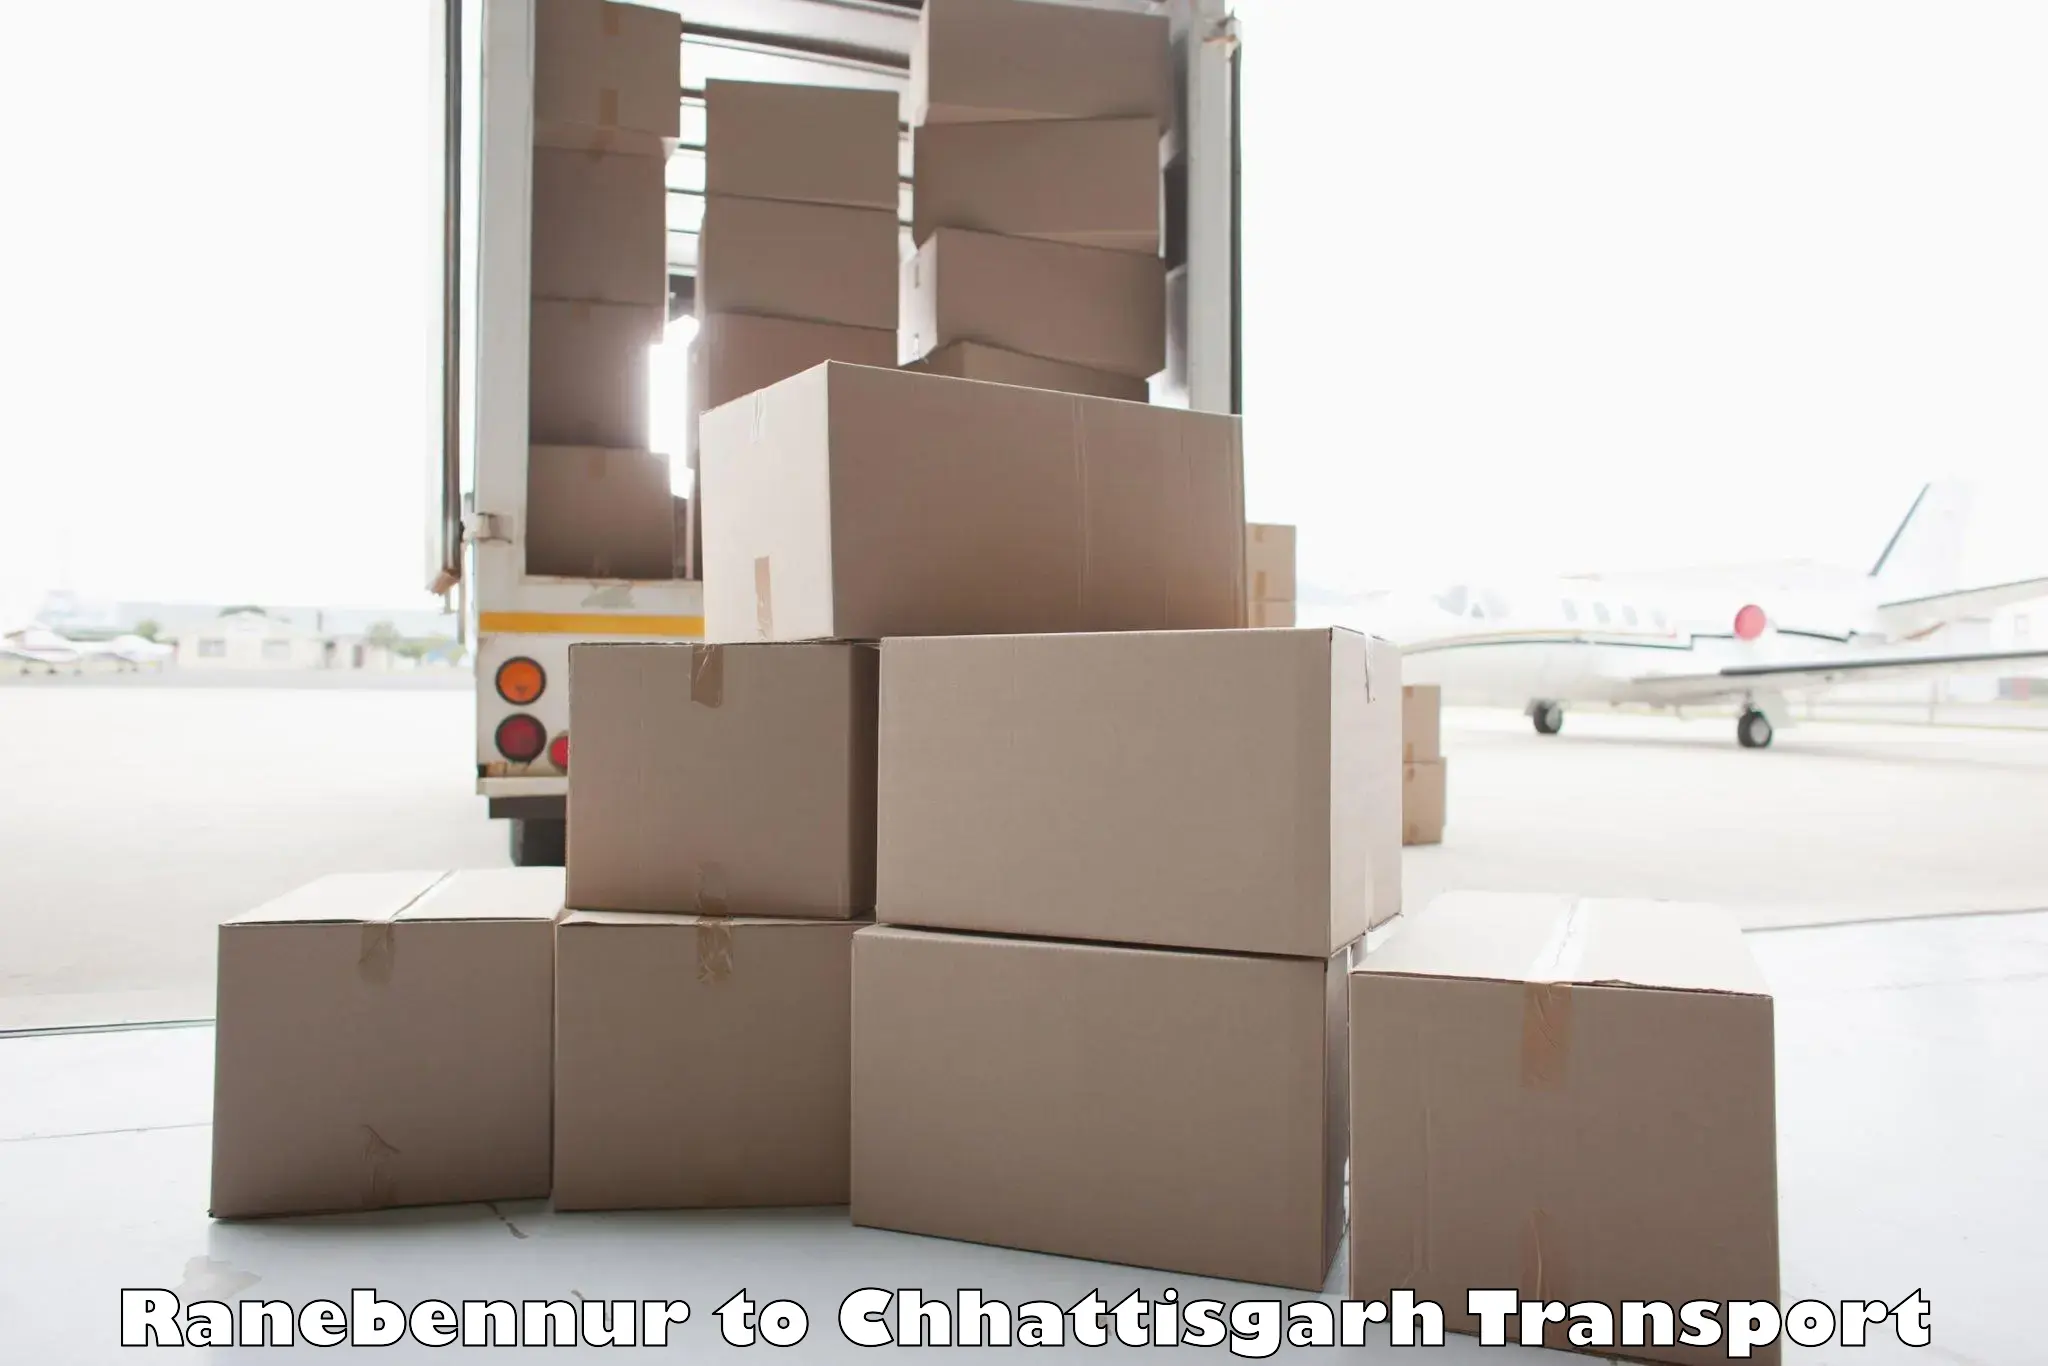 Furniture transport service Ranebennur to Ratanpur